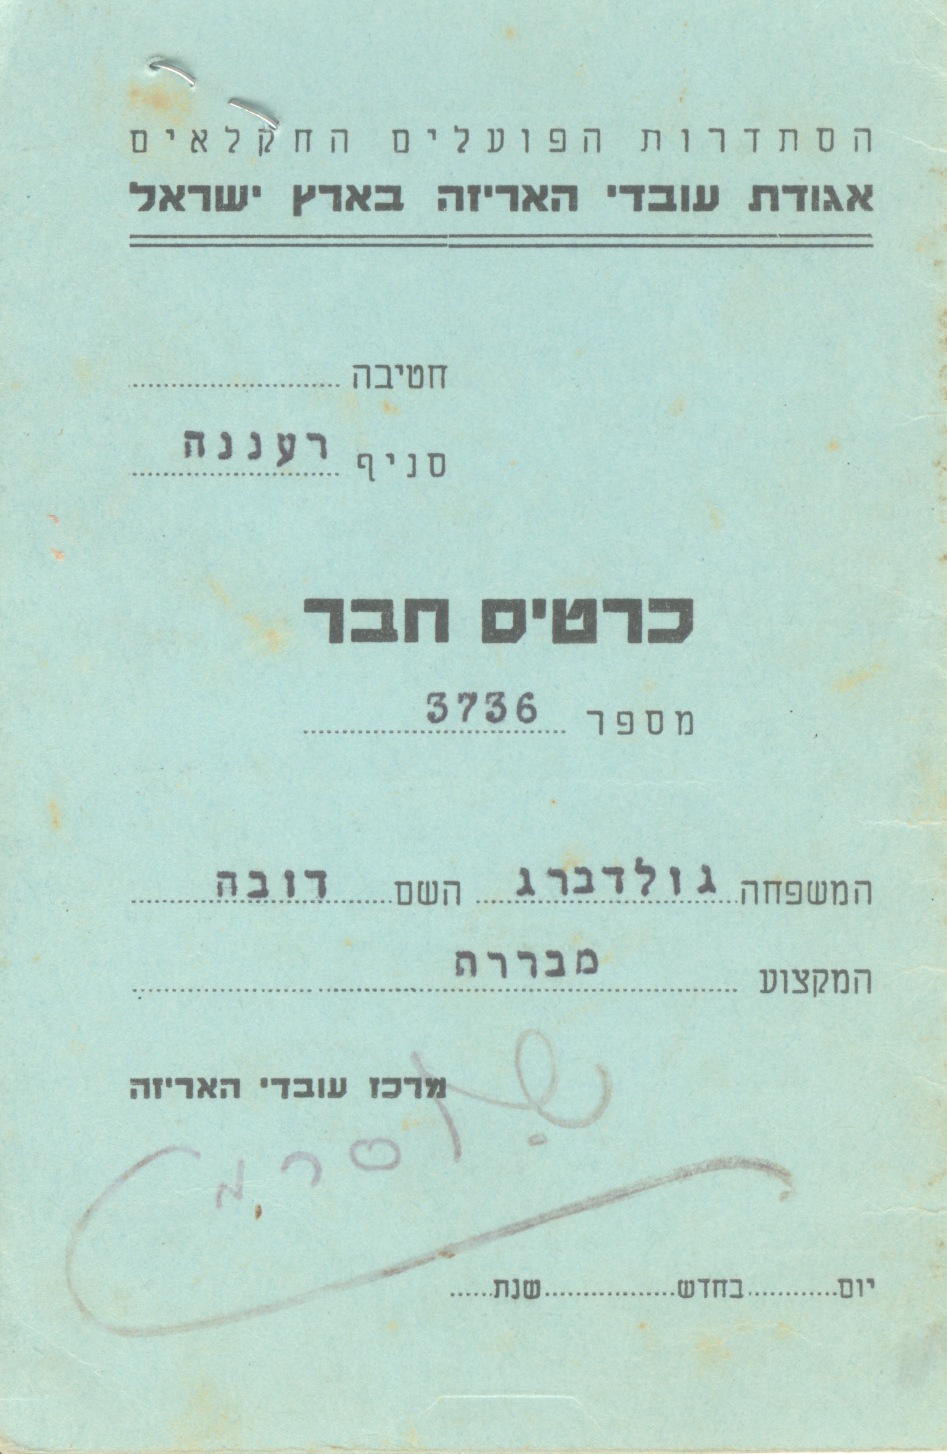 כרטיס חבר של דובה גולדברג כמבררת באגודת עובדי האריזה בארץ ישראל- חלק חיצוני